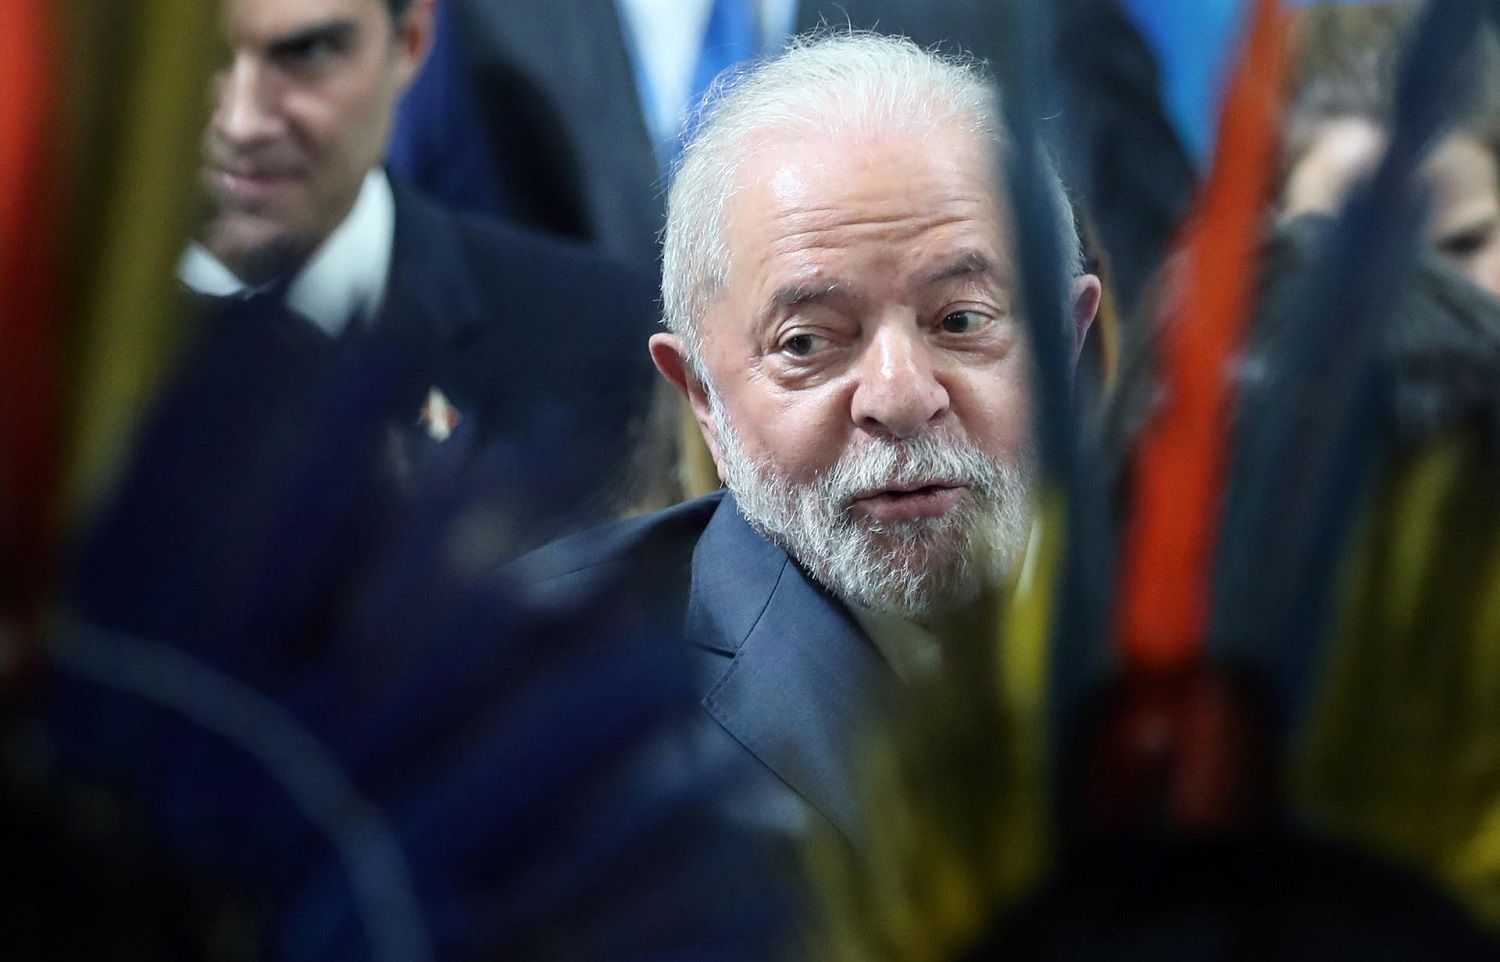 El presidente electo de Brasil, Lula da Silva, en la cumbre del clima COP27 de Sharm El Sheikh, el 16 de noviembre de 2022. EFE/KHALED ELFIQI